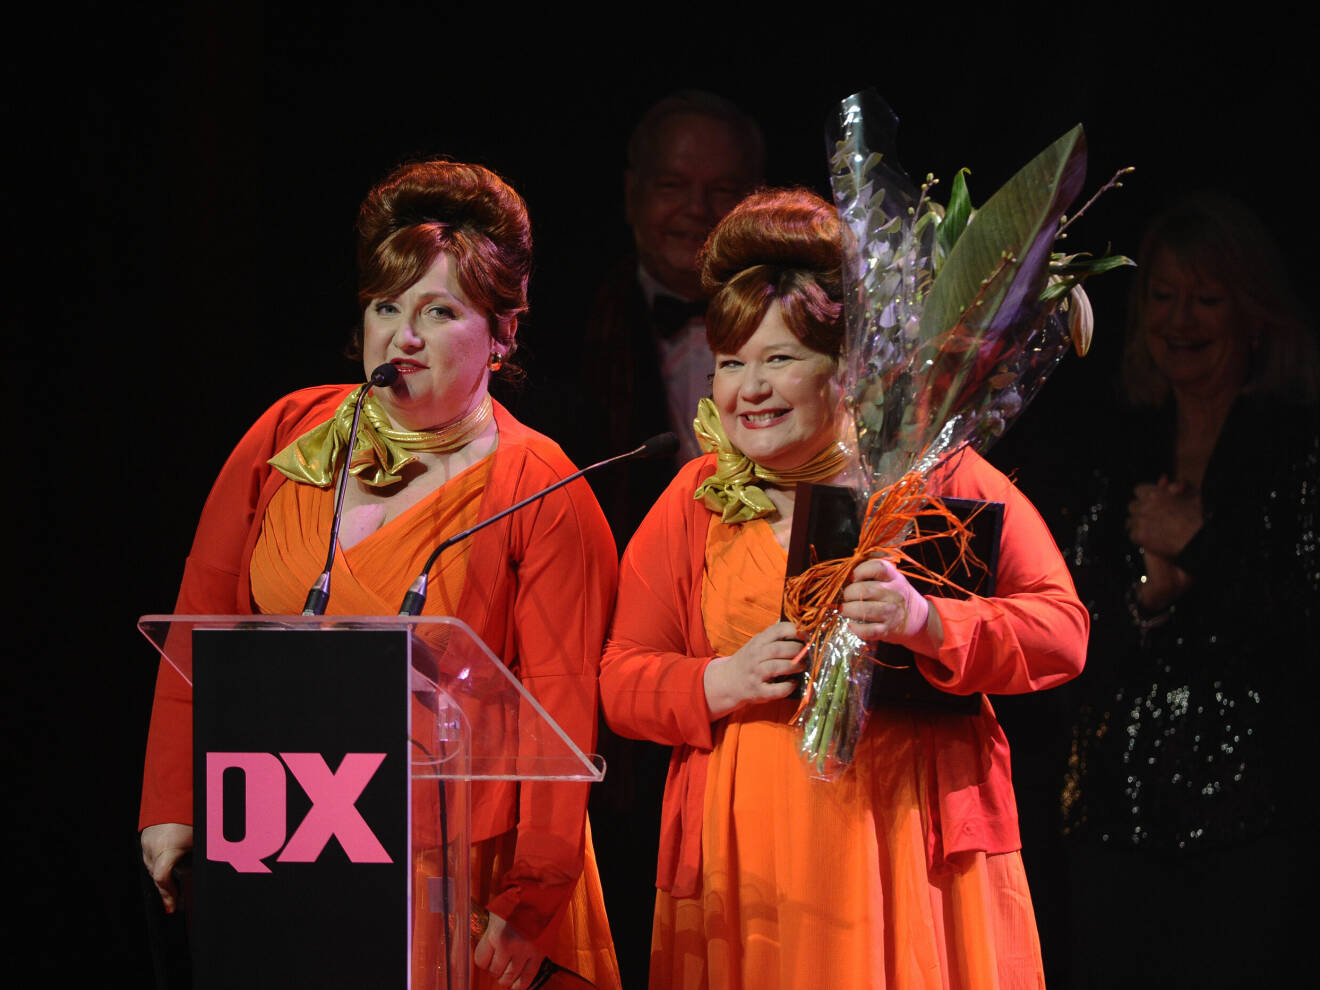 Carina Perenkranz och Pernilla Parszyk vann årets duo för sina karaktärer Judit och Judit under QX Galan, Cirkus i Stockholm år 2012.